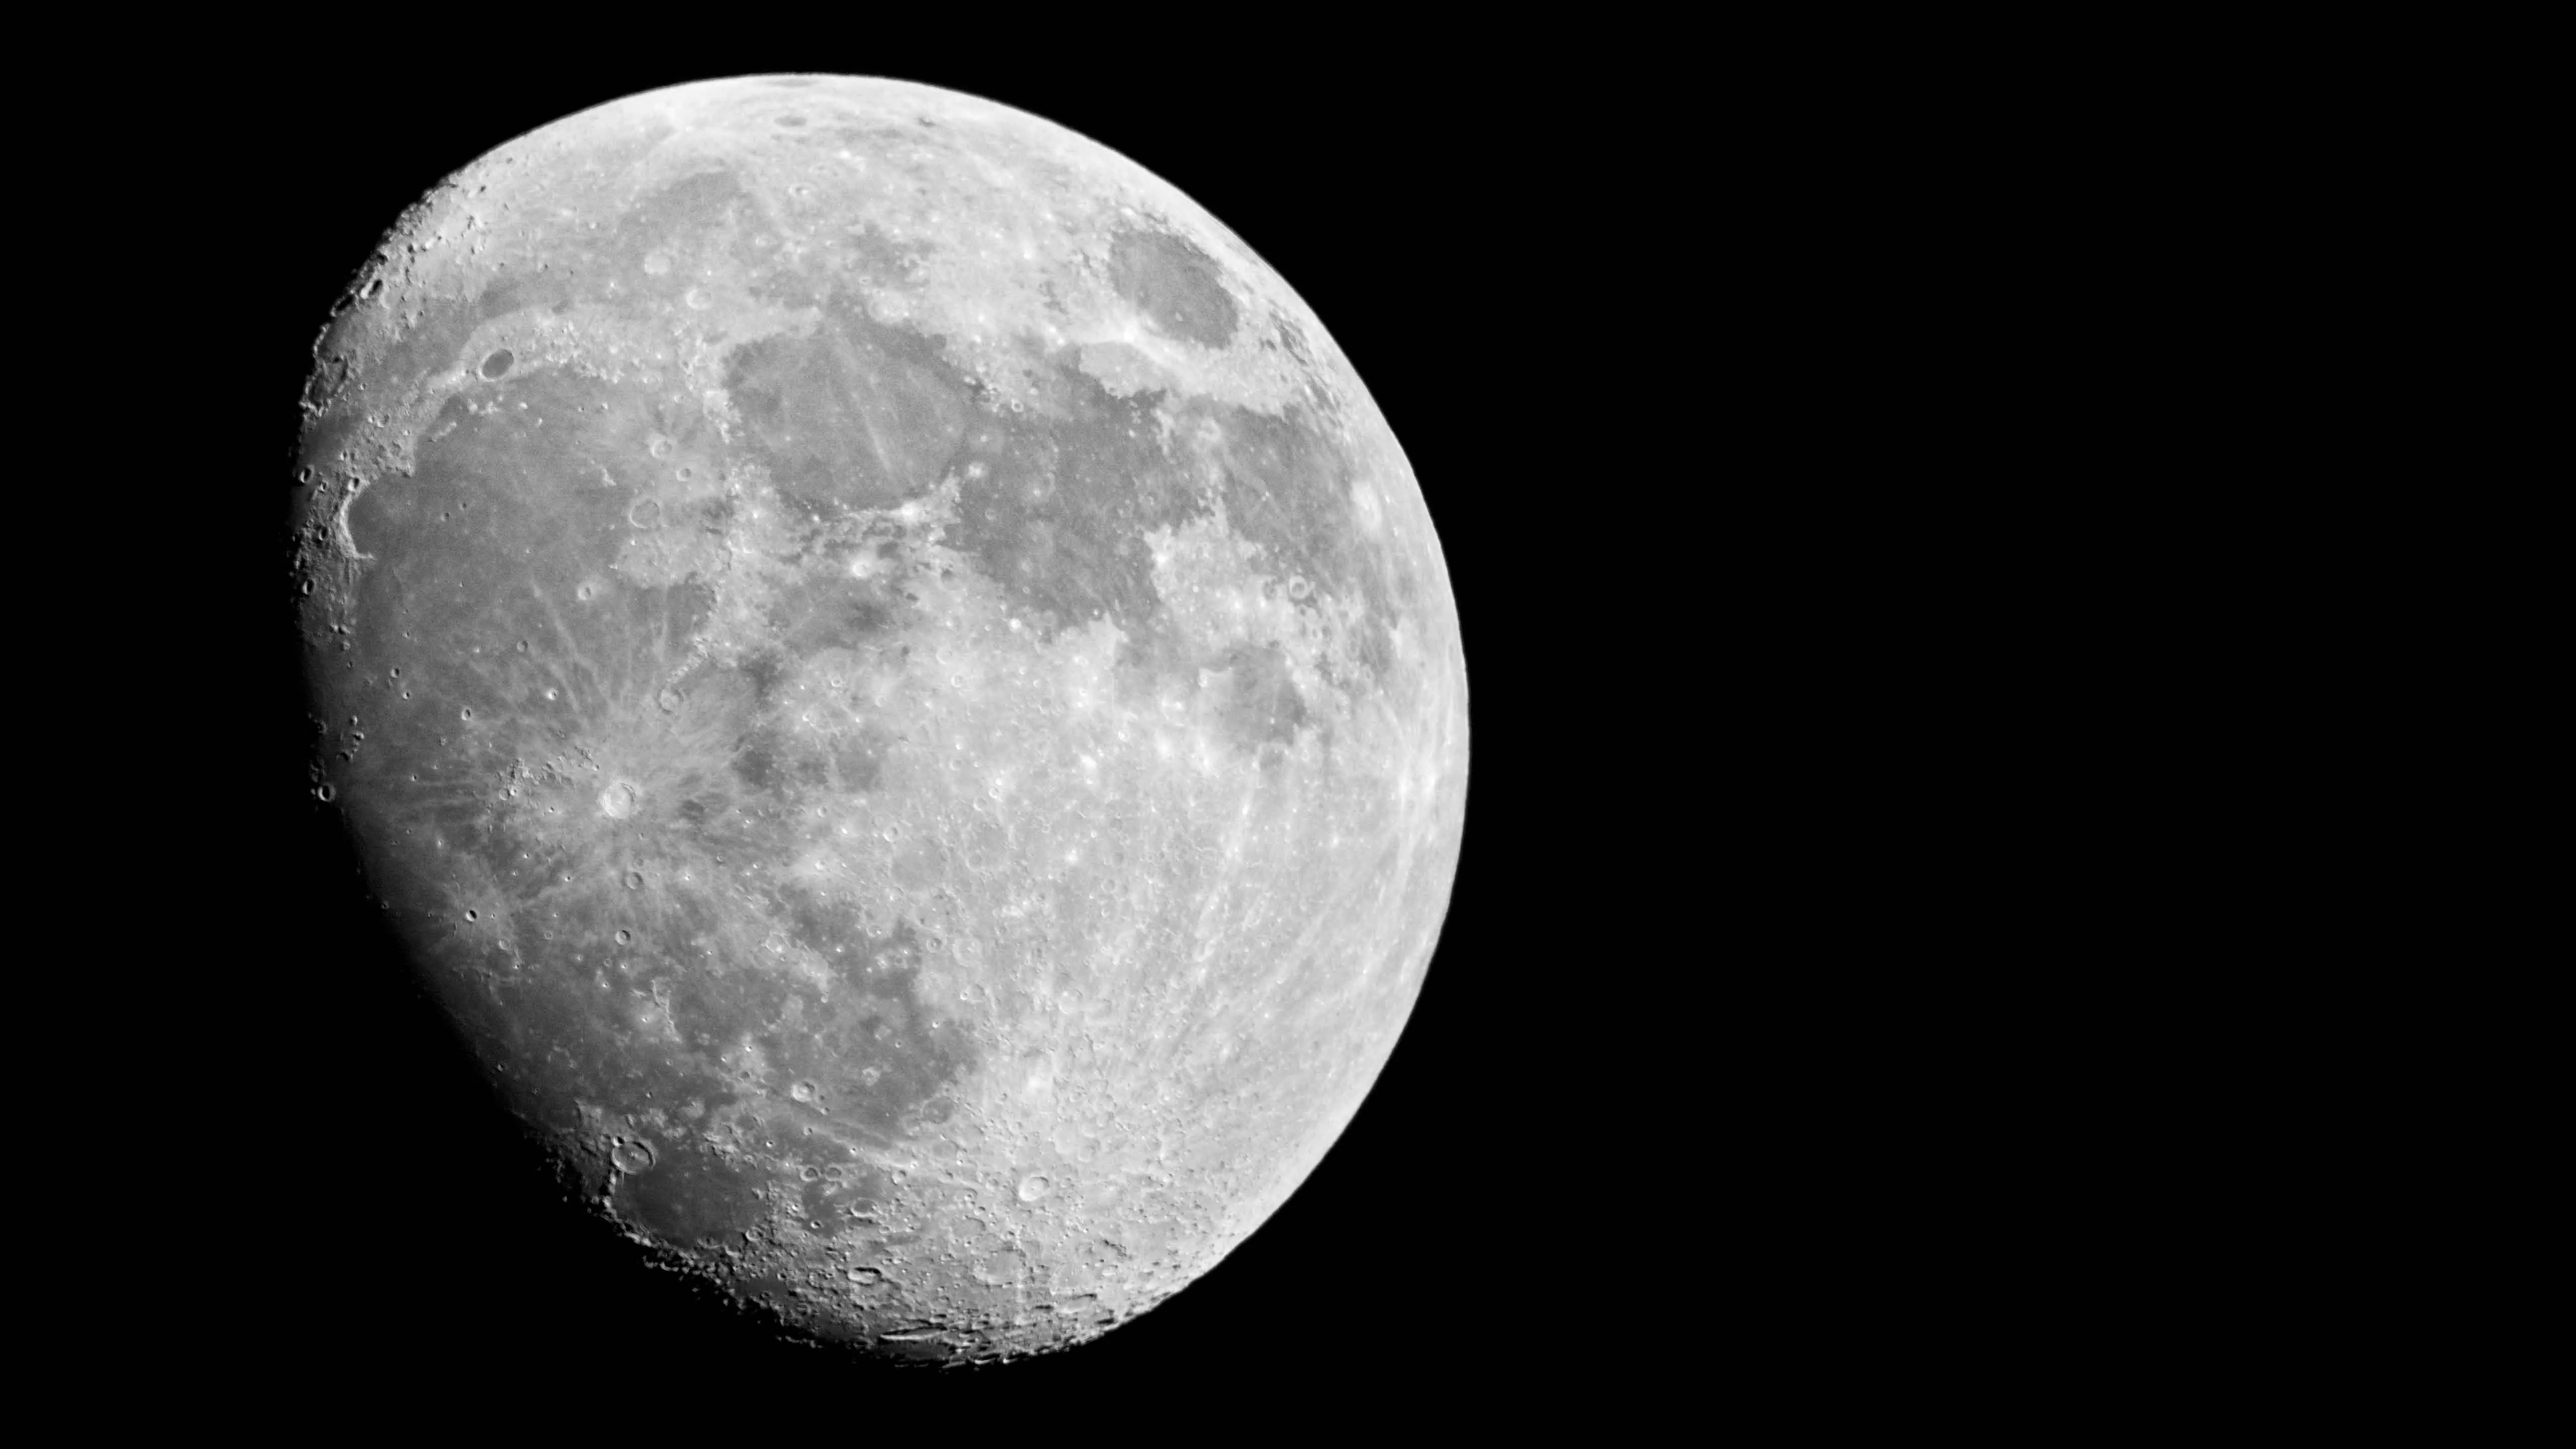 Moon over Kenora, Ontario – 10" f4.7 Newtonian telescope, Canon 7D